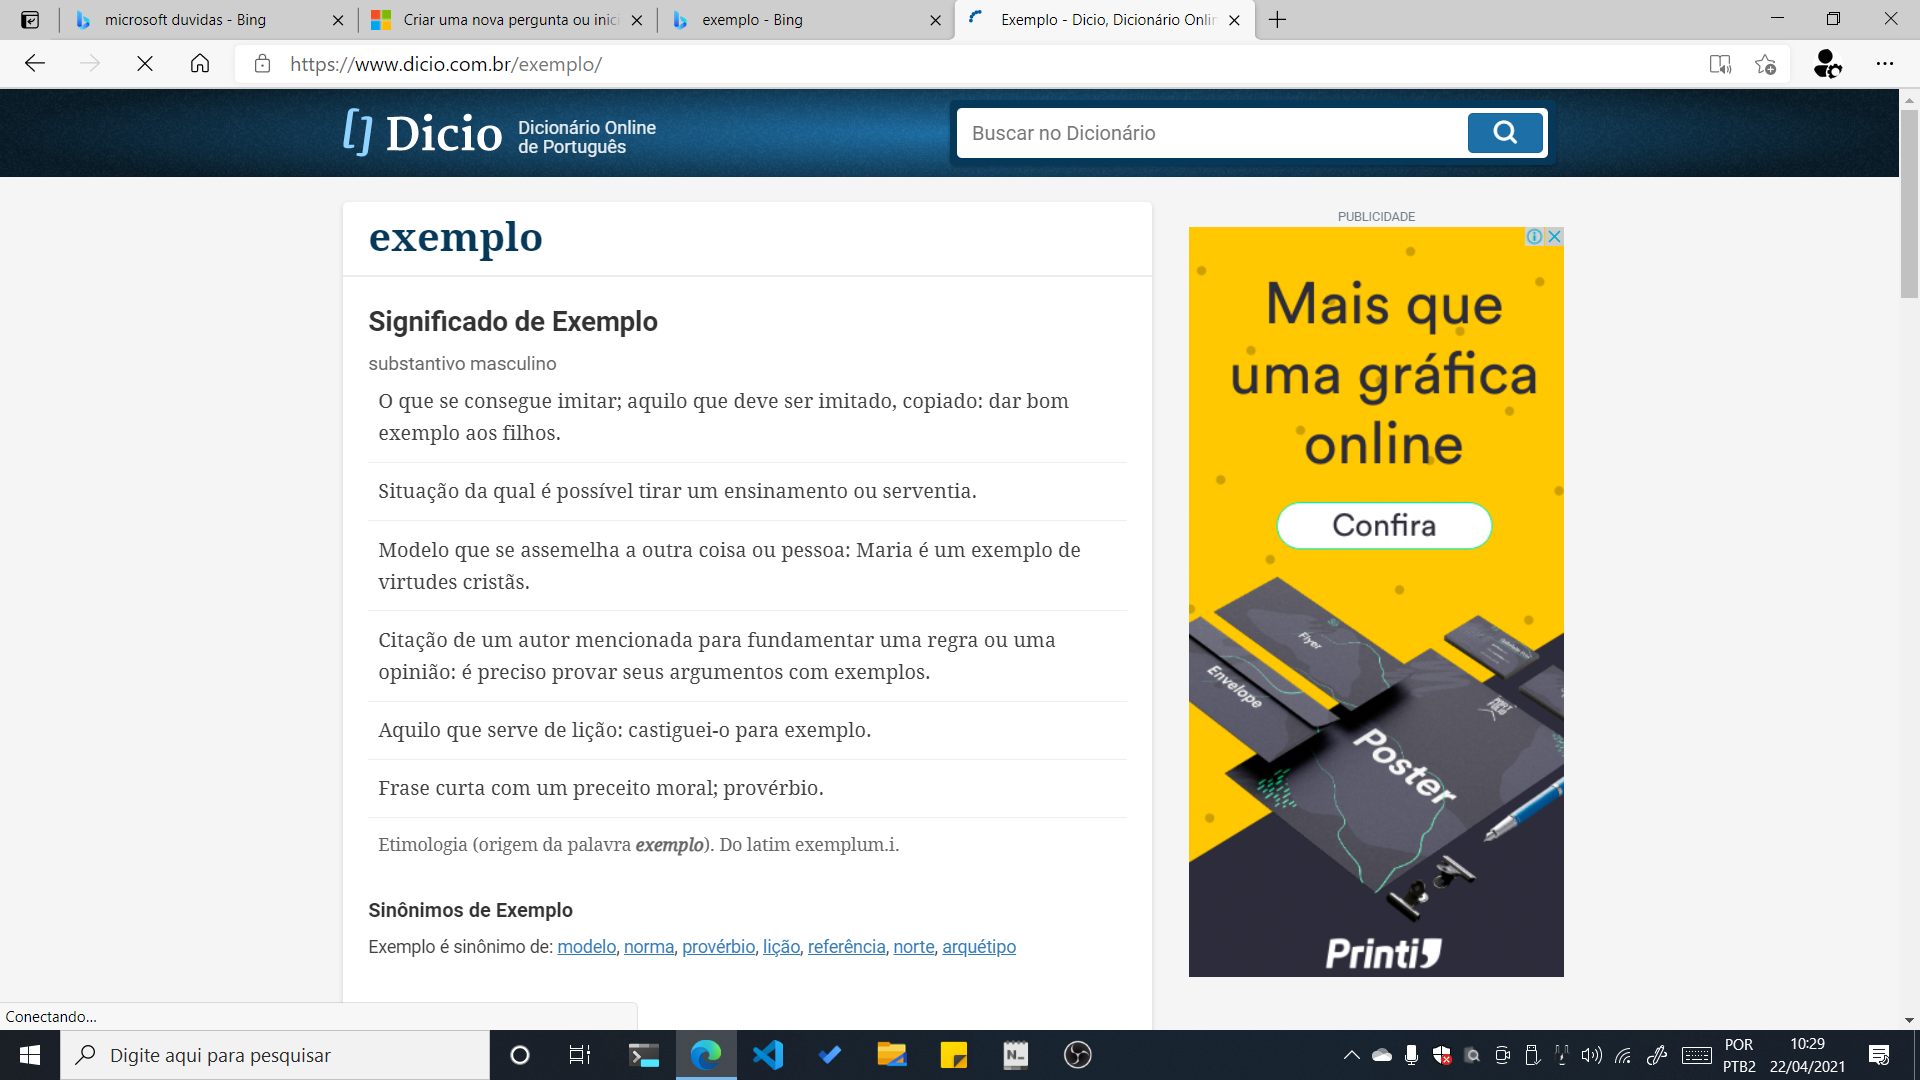 Fofo - Dicio, Dicionário Online de Português